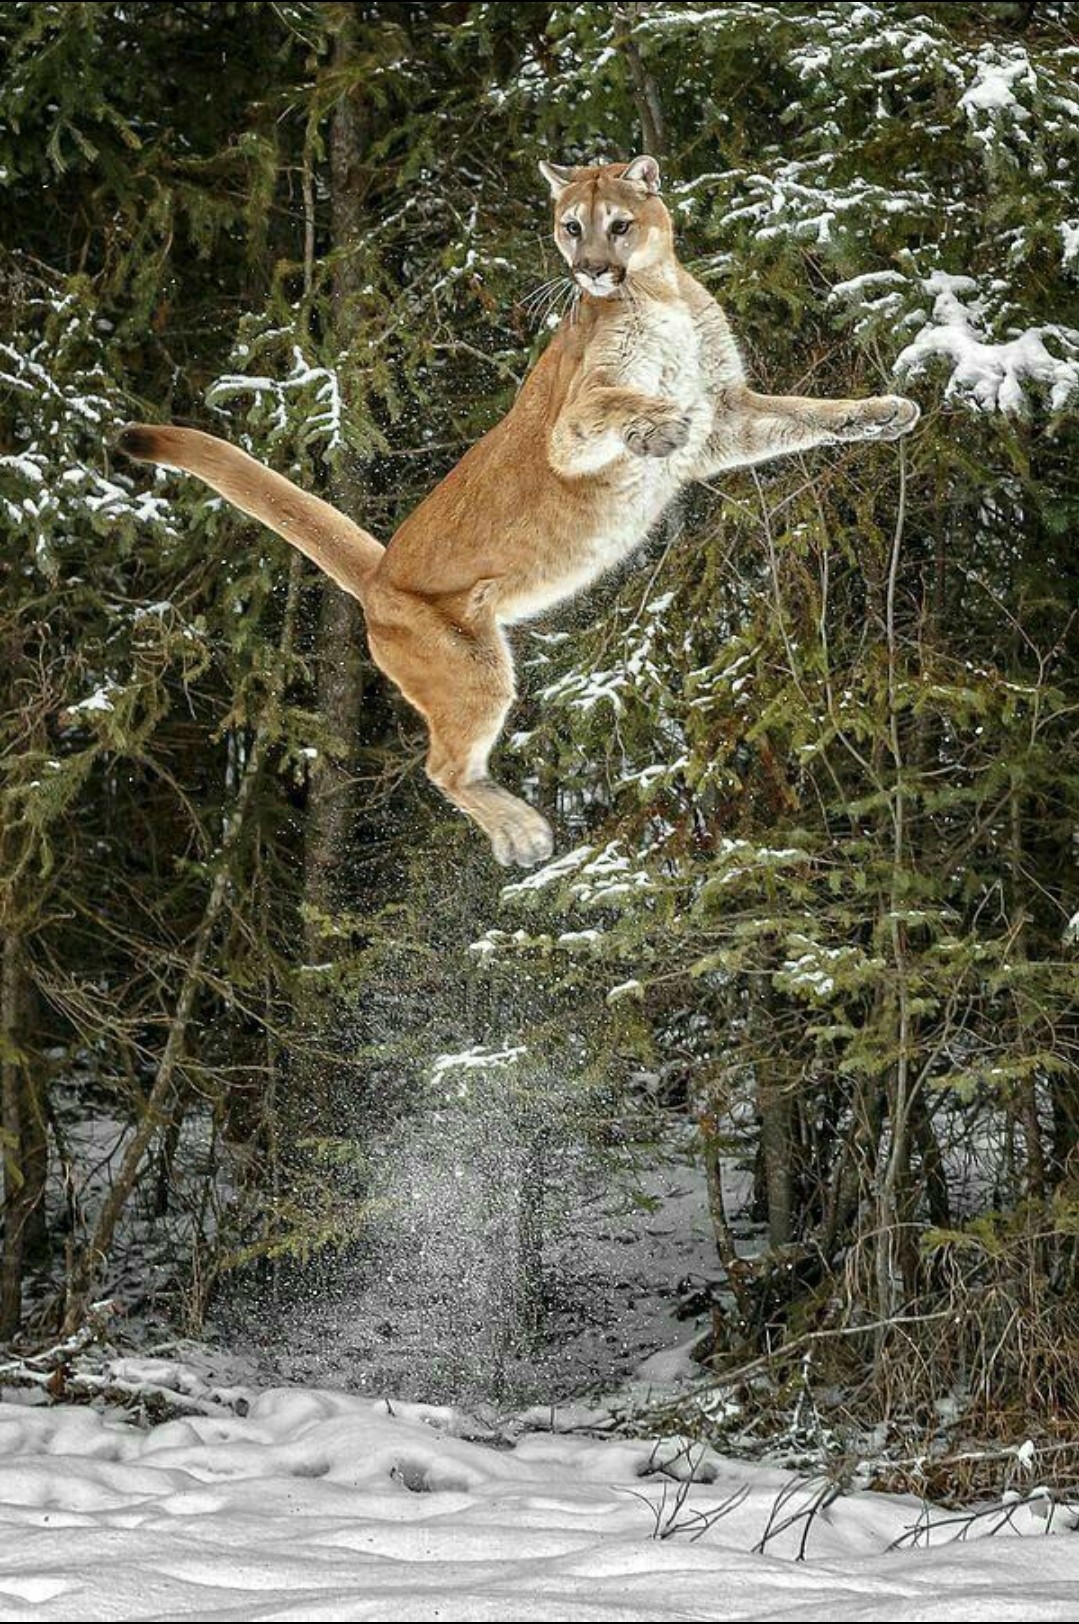 Пума в прыжке. Горный лев (кугуар) способен запрыгнуть на 4,5 м